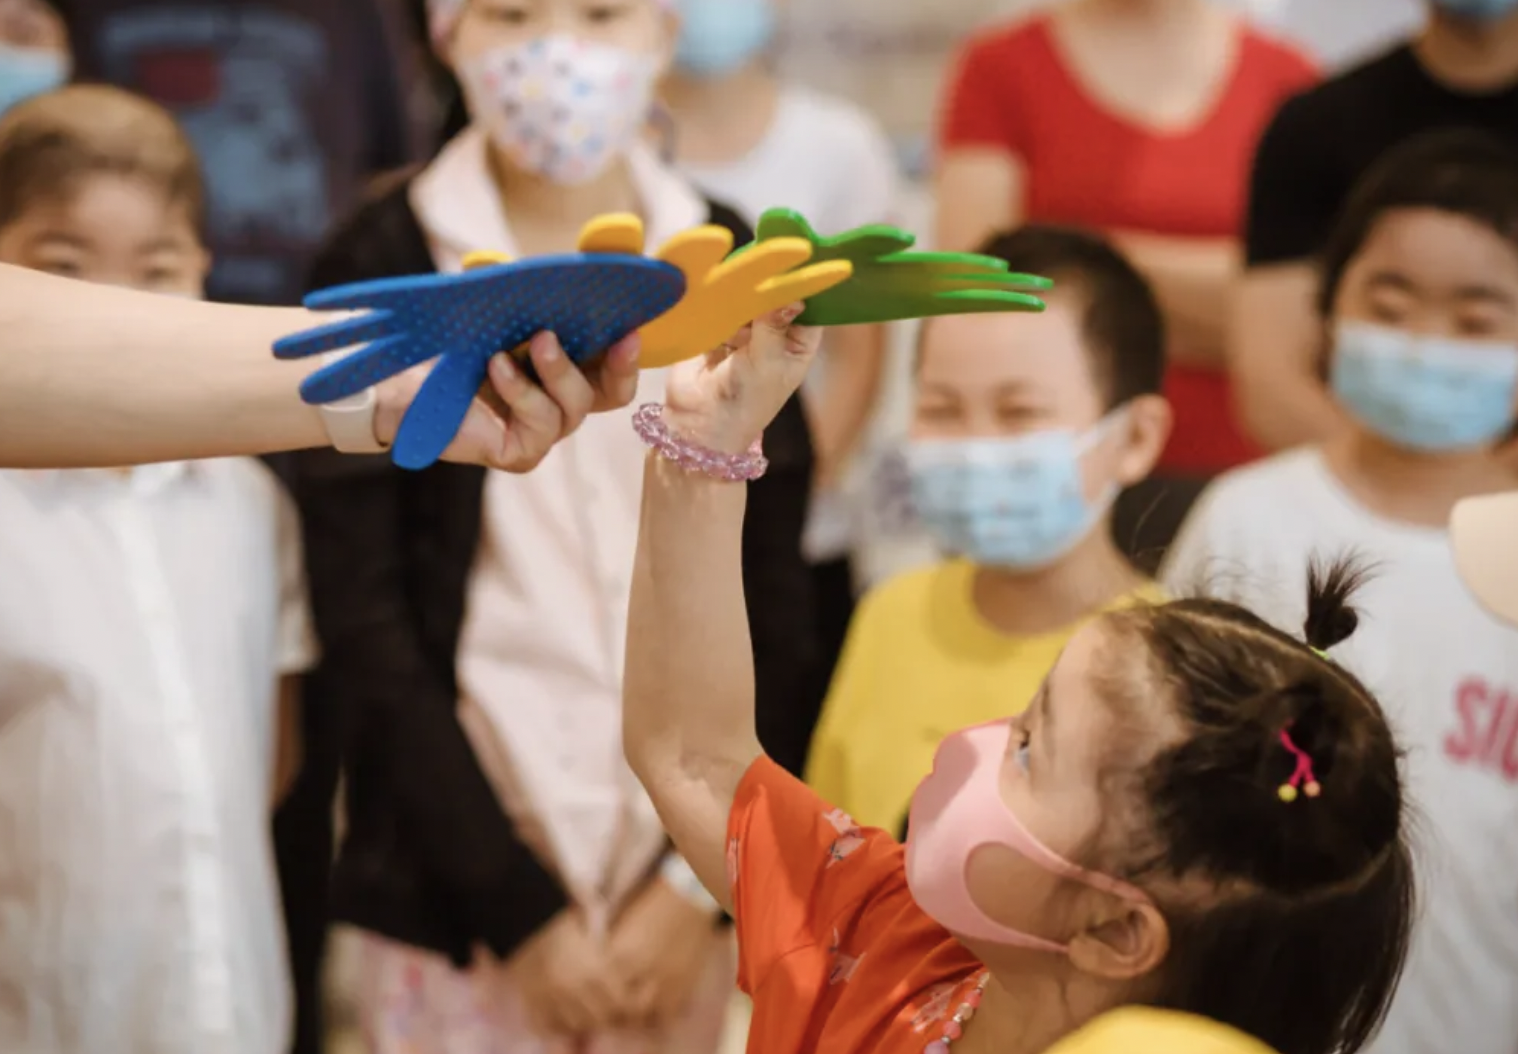 中华少年儿童慈善救助基金会 慈善募捐丨温暖病房守护行动